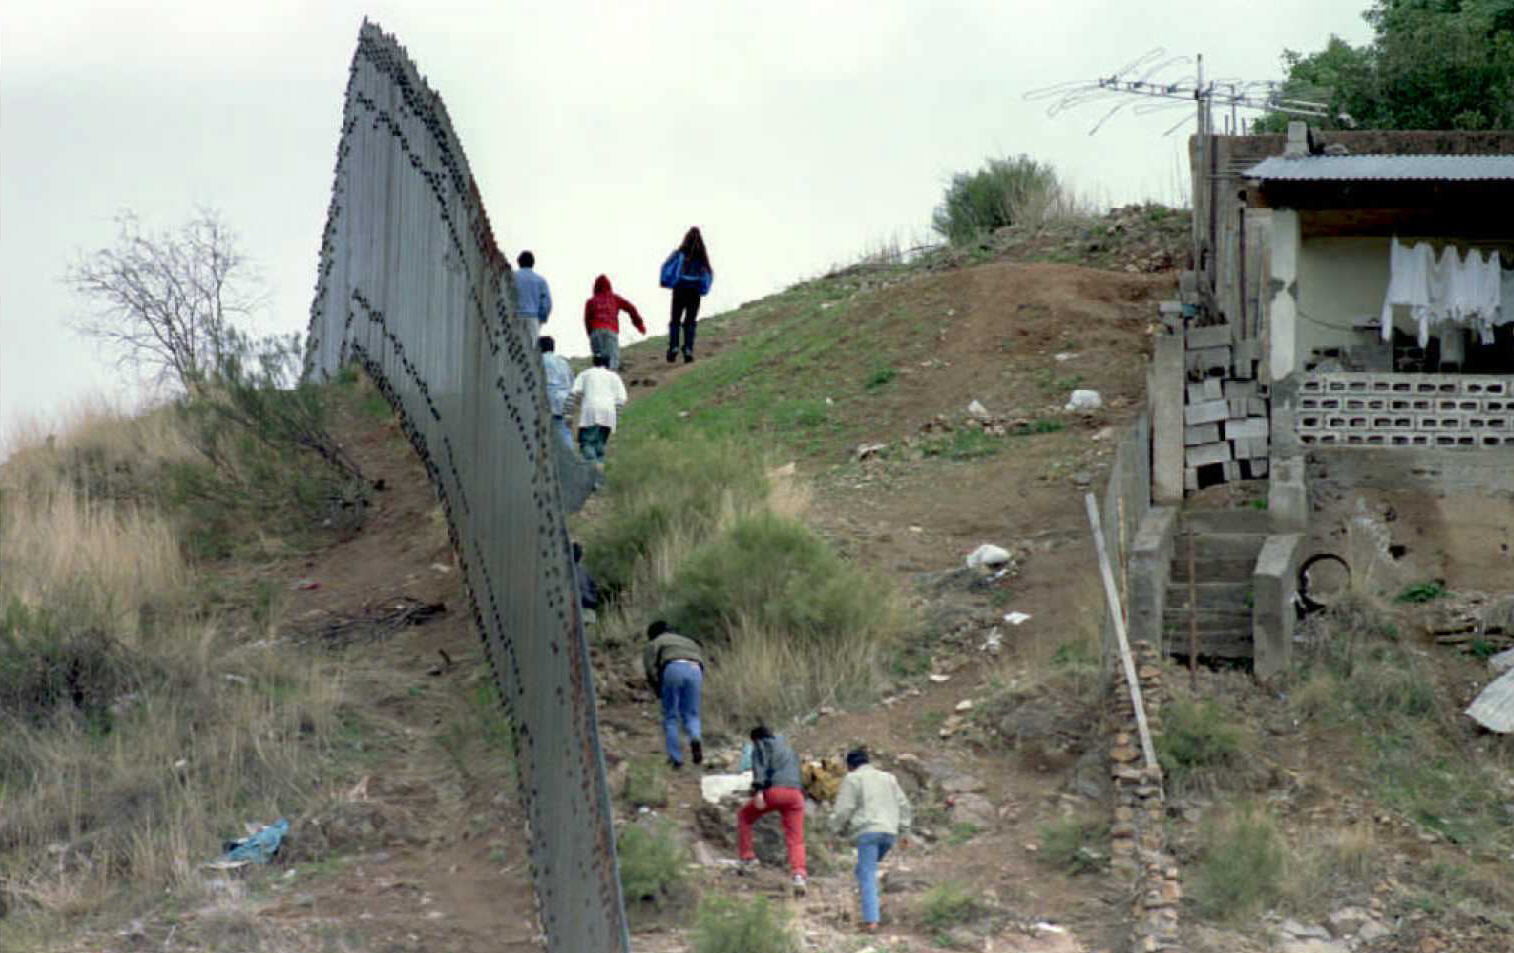 El Origen De Los Migrantes De Los Tiempos Del Cerco De Gallinero Al Muro Fronterizo De Acero 4006